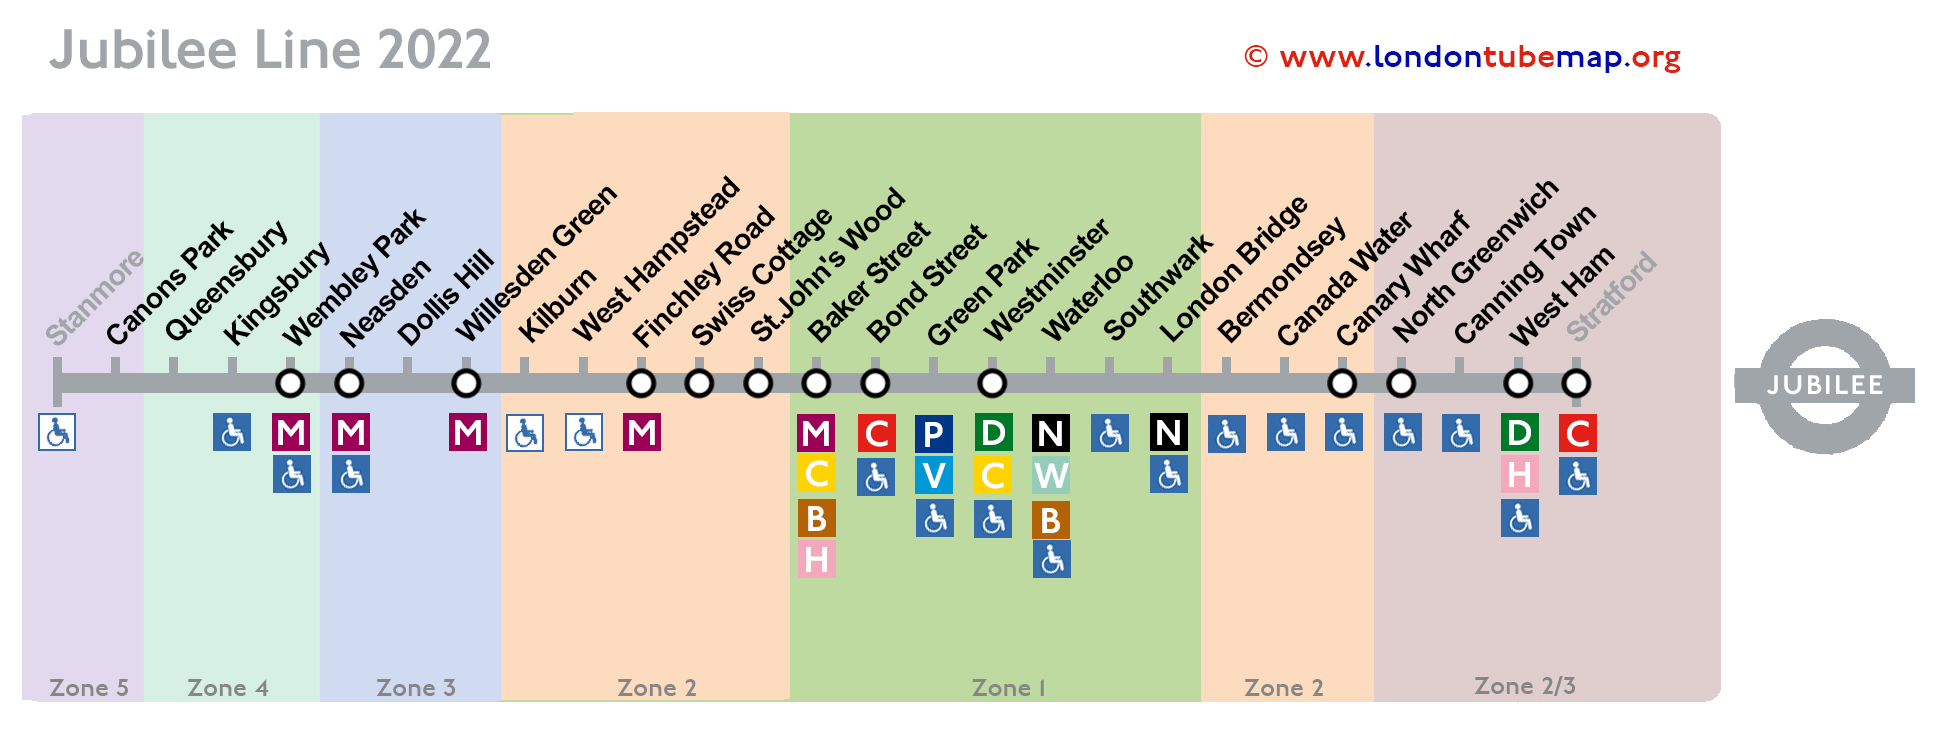 Jubilee line map 2022